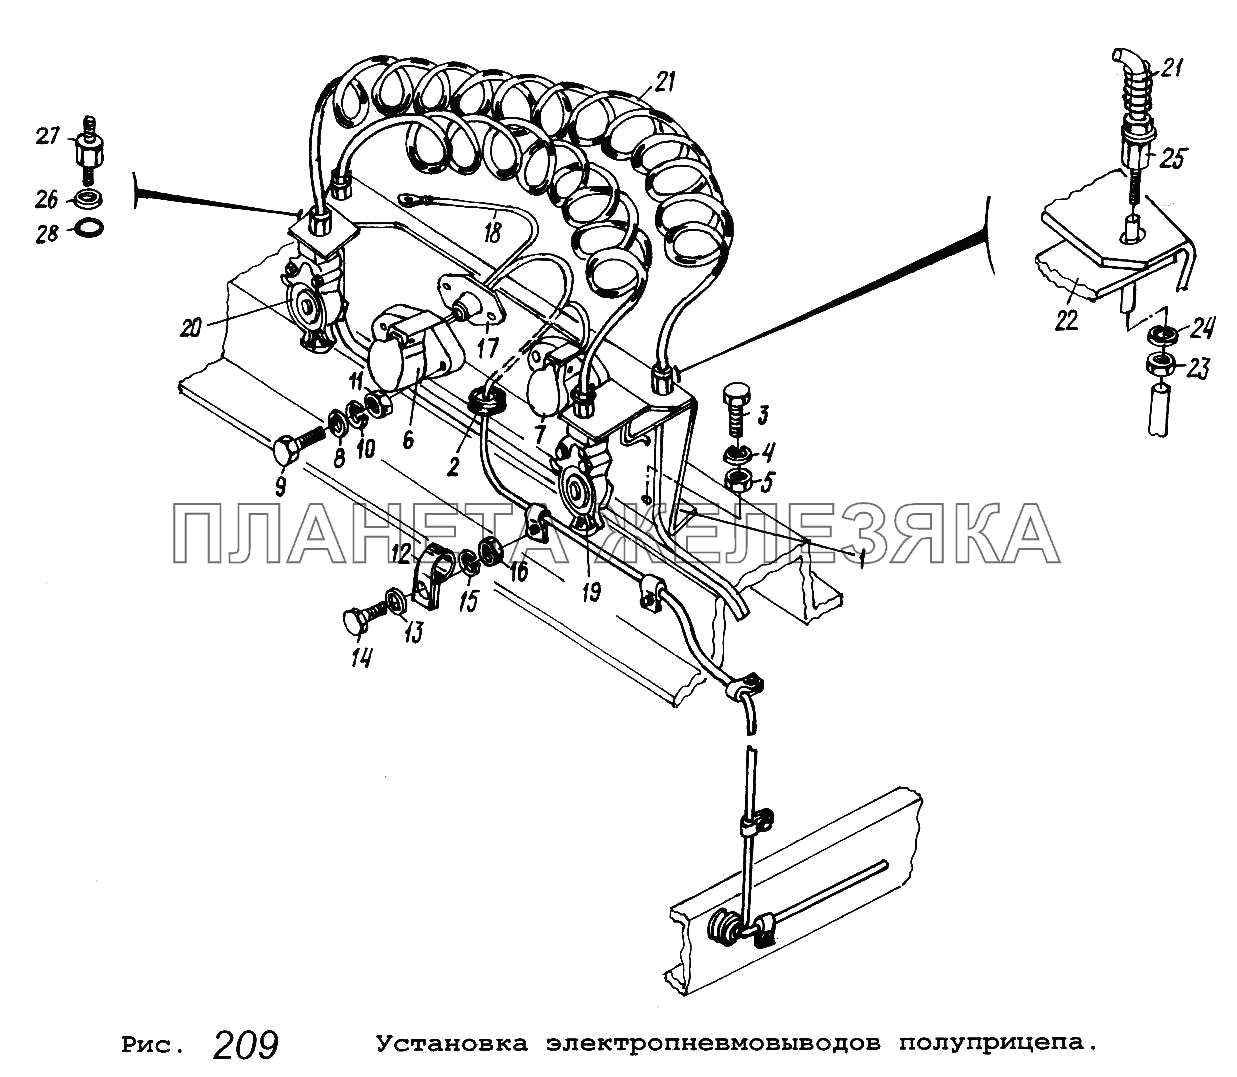 Установка электропневмовыводов полуприцепа МАЗ-5551